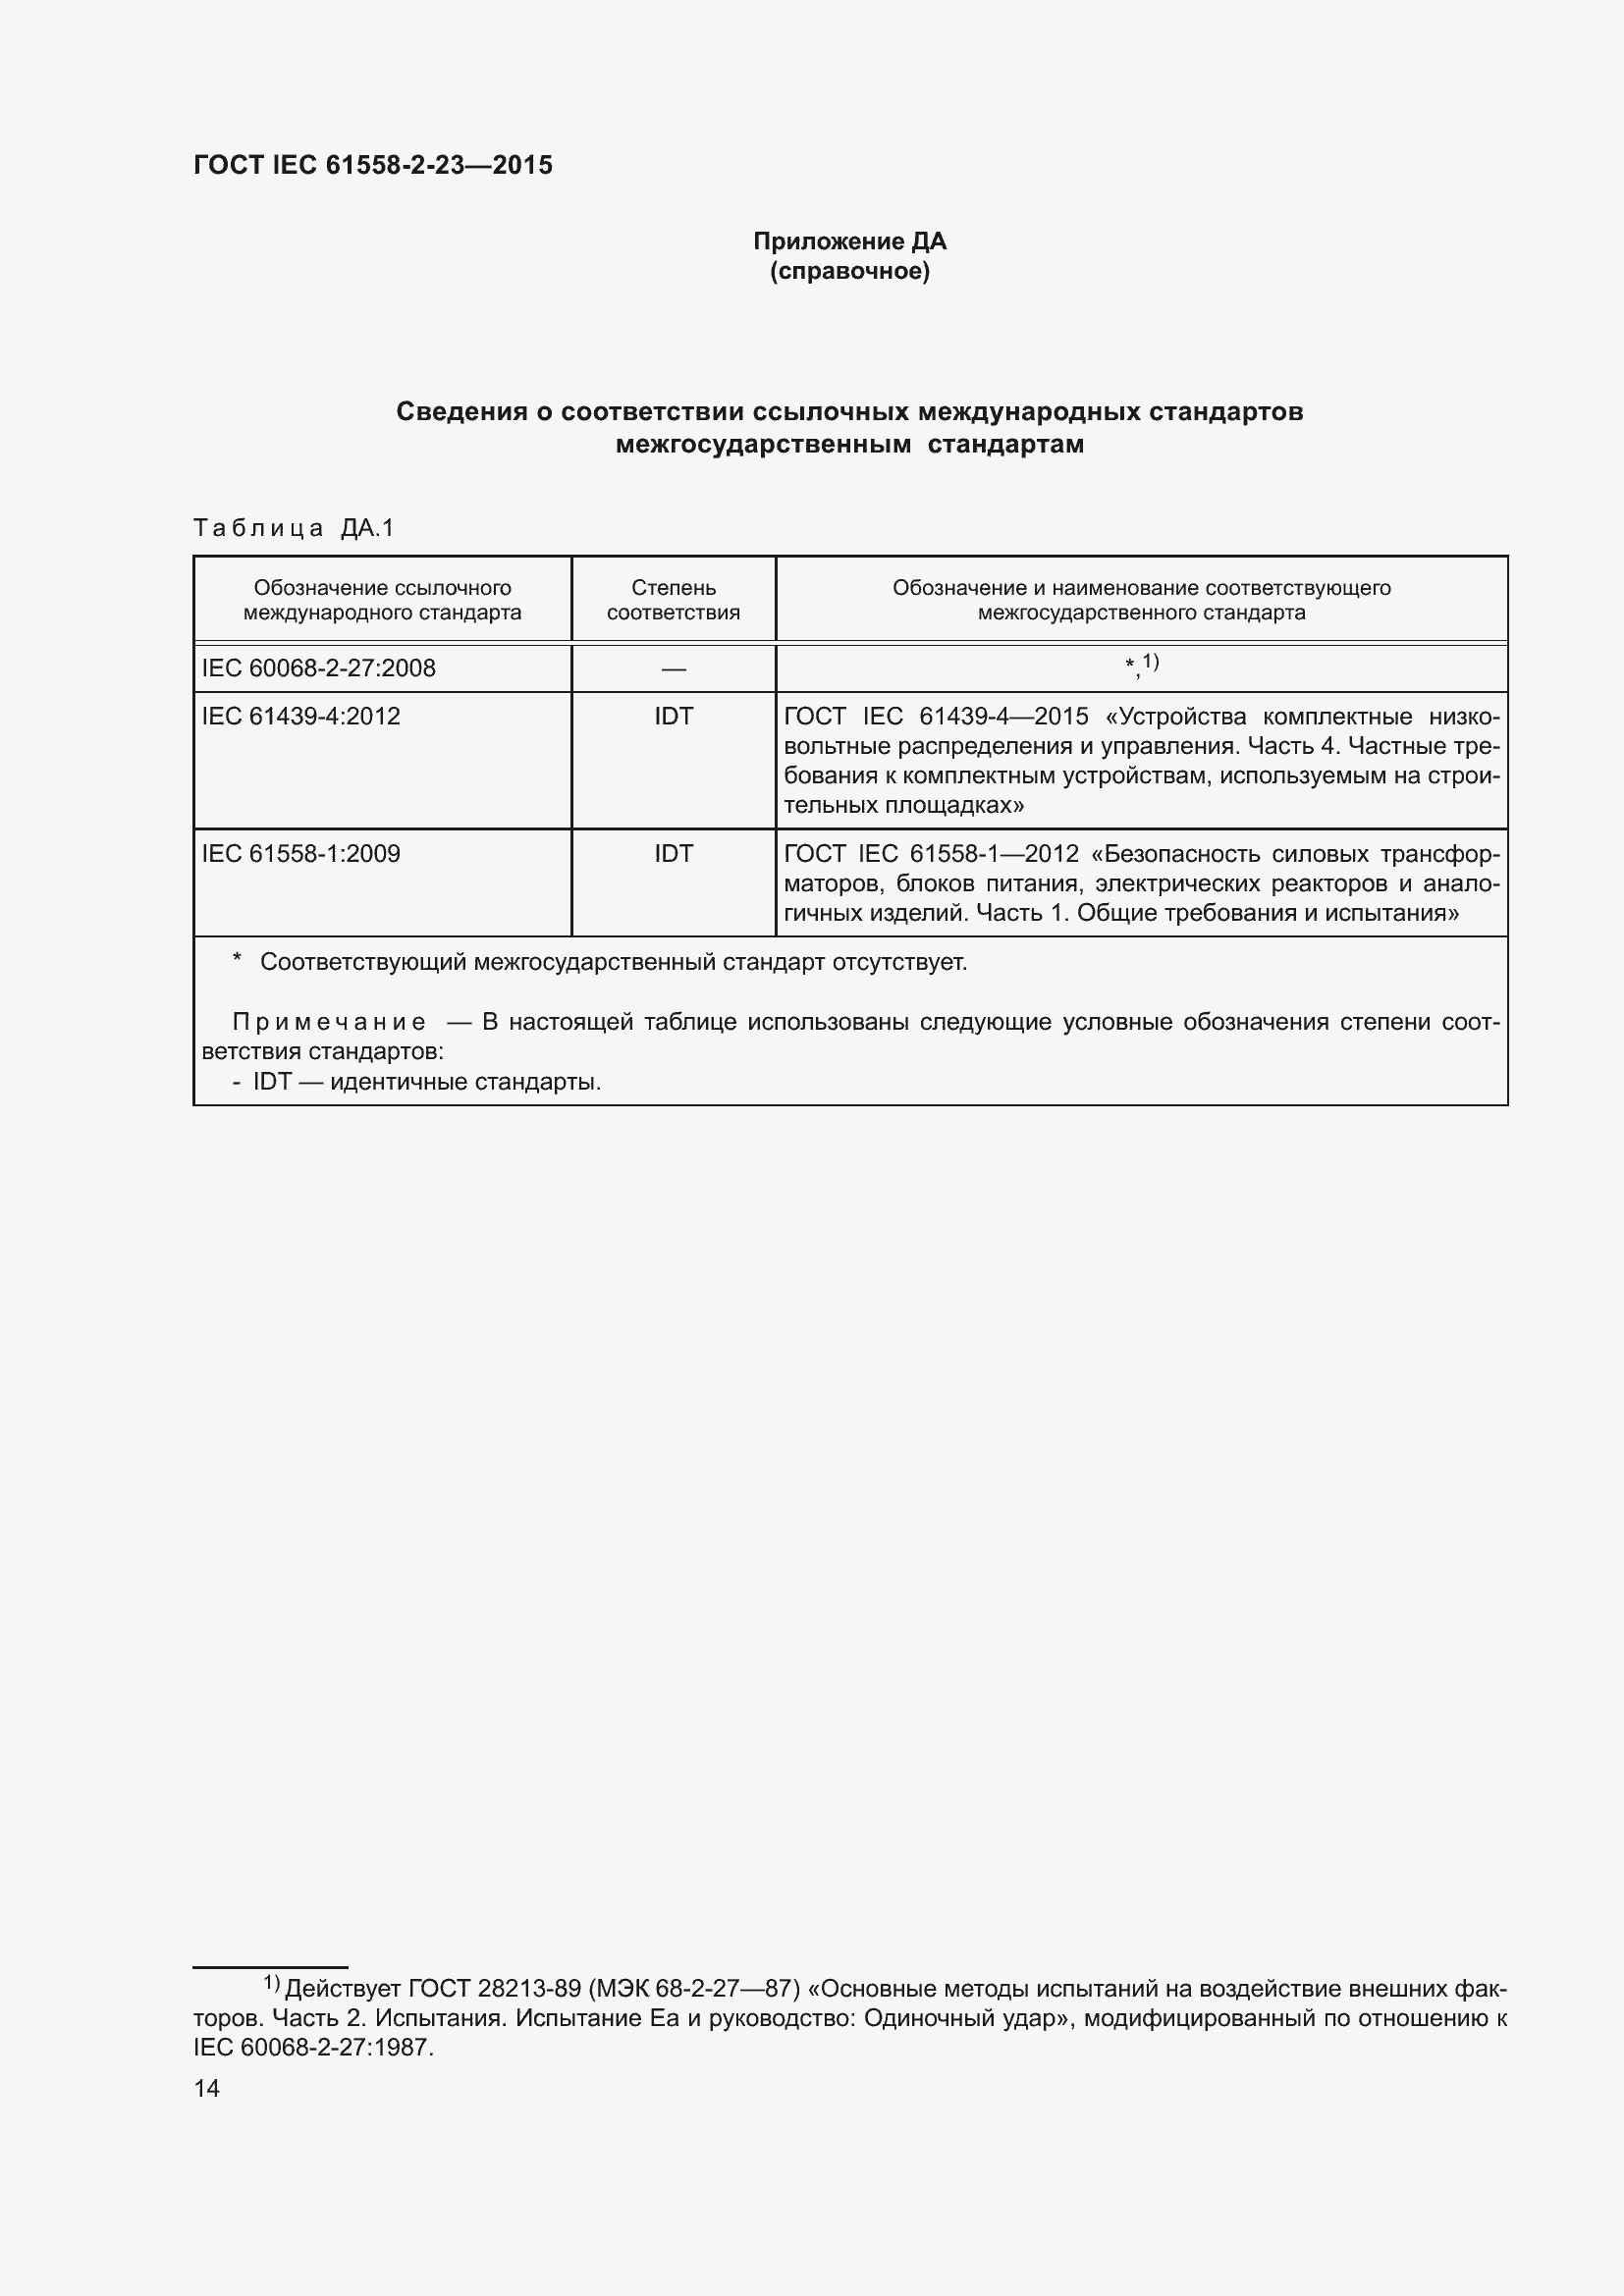  IEC 61558-2-23-2015.  18